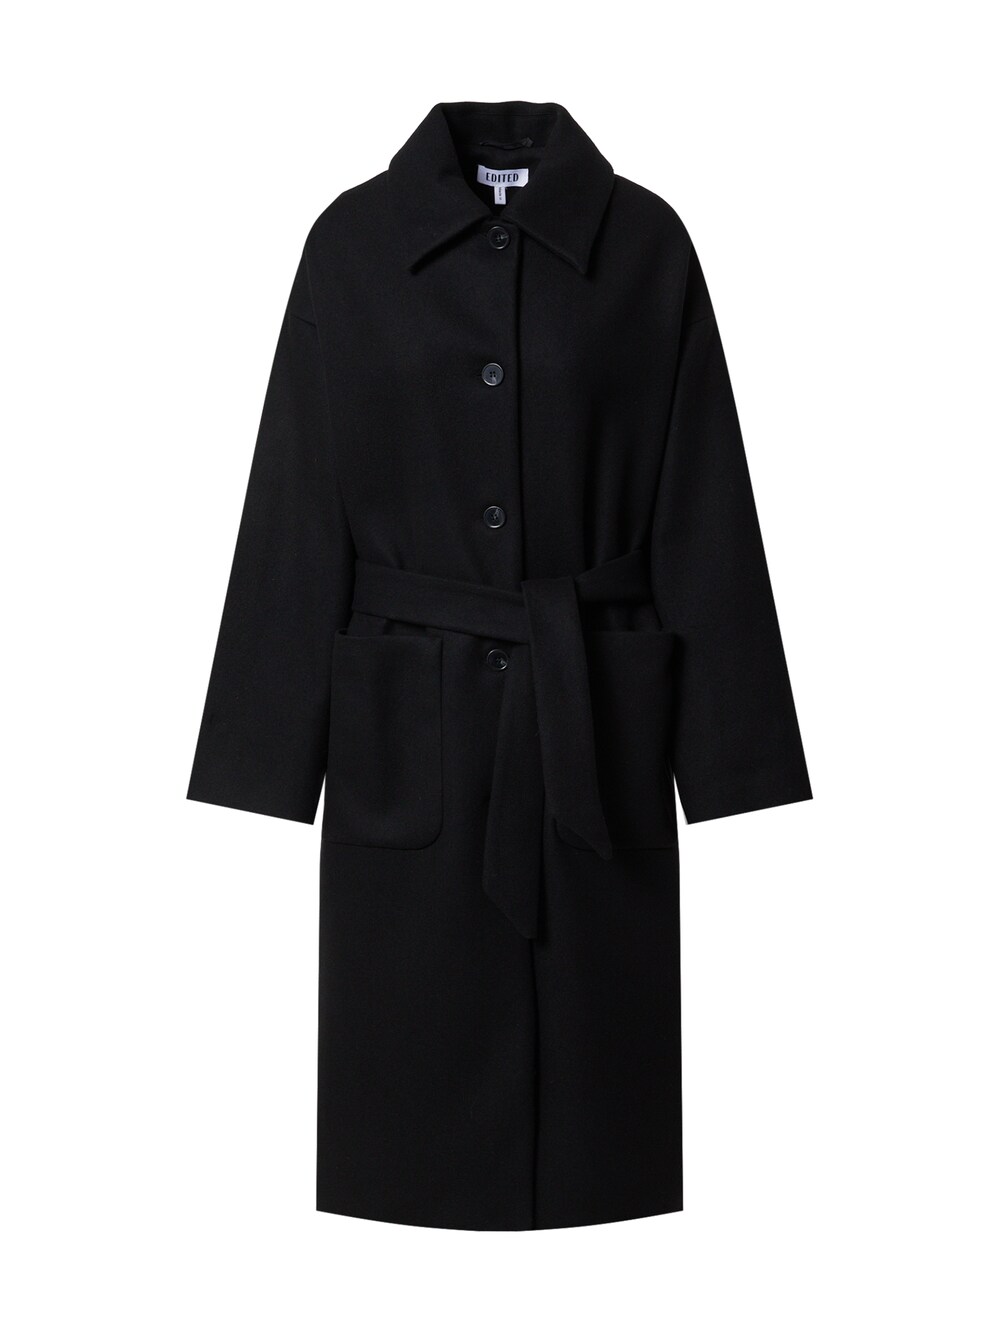 Межсезонное пальто EDITED Tosca, черный межсезонное пальто edited tosca пестрый серый